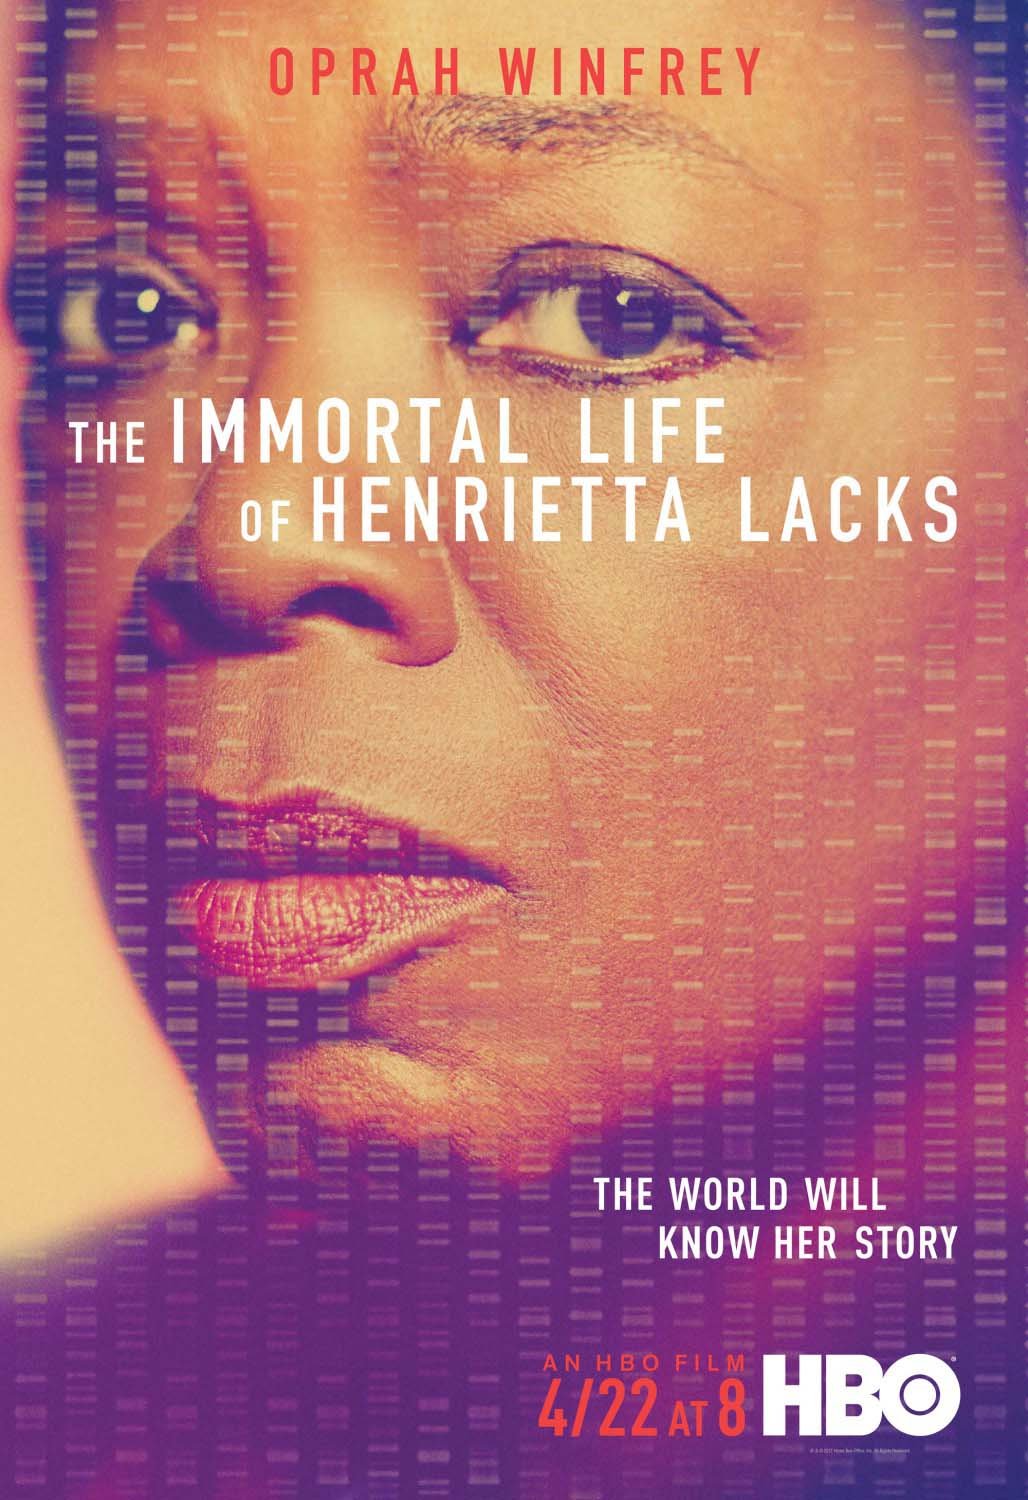 ჰენრიეტა ლაკსის უკვდავი ცხოვრება / The Immortal Life of Henrietta Lacks ქართულად